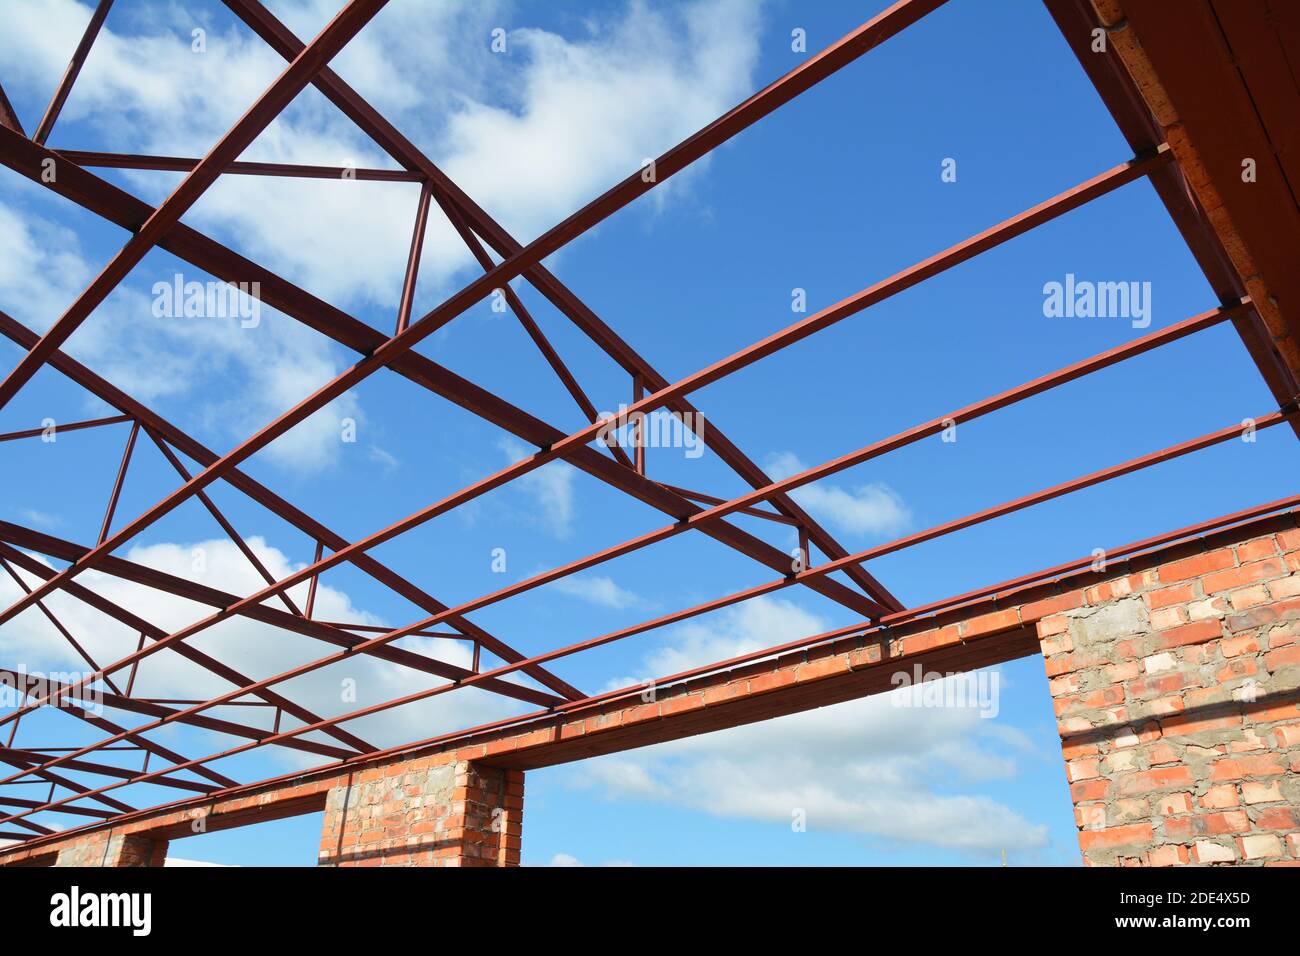 Construcción de techado. Cerca de vigas de madera, aleros, vigas de madera  instalados en pared de ladrillo con bitumen membrana impermeabilizante y  anclajes en metal Fotografía de stock - Alamy